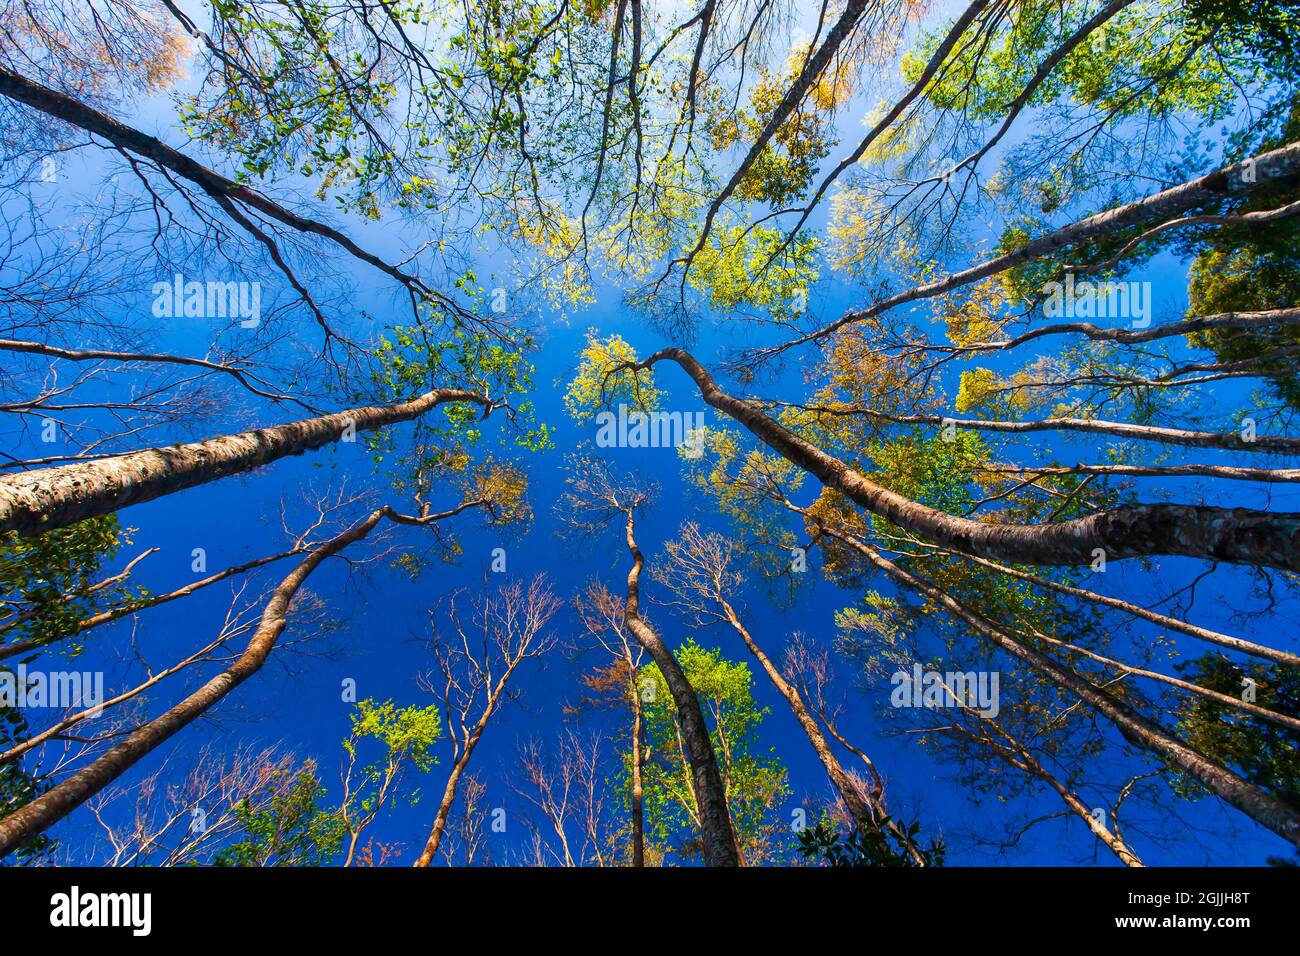 Blick auf den farbenfrohen Wald im Frühling vor dem blauen Himmel. Abstrakte Bäume Äste und bunte Blätter vor blauem Himmel im Hintergrund. Stockfoto